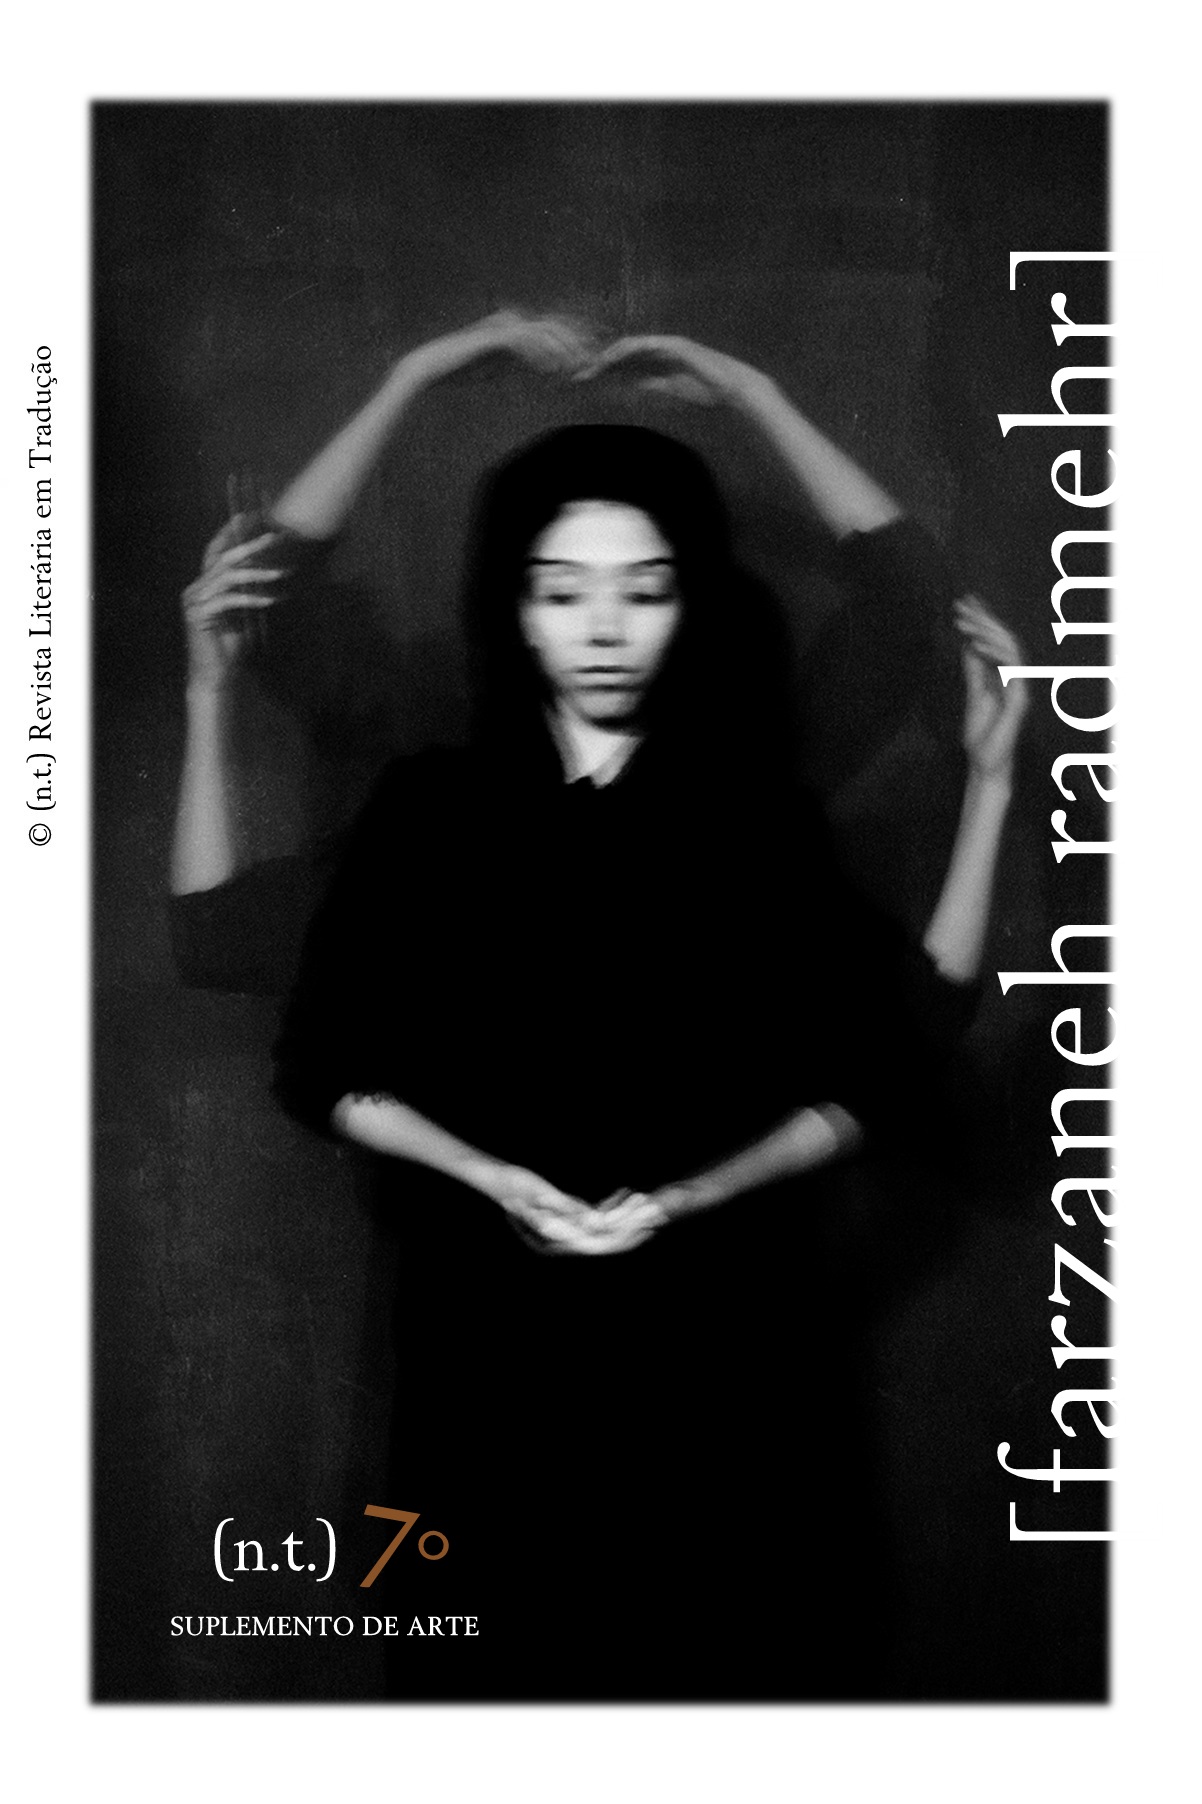 انتشار آثار فرزانه رادمهر ، عکاس ایرانی در مجله Suplemento de Arte برزیل